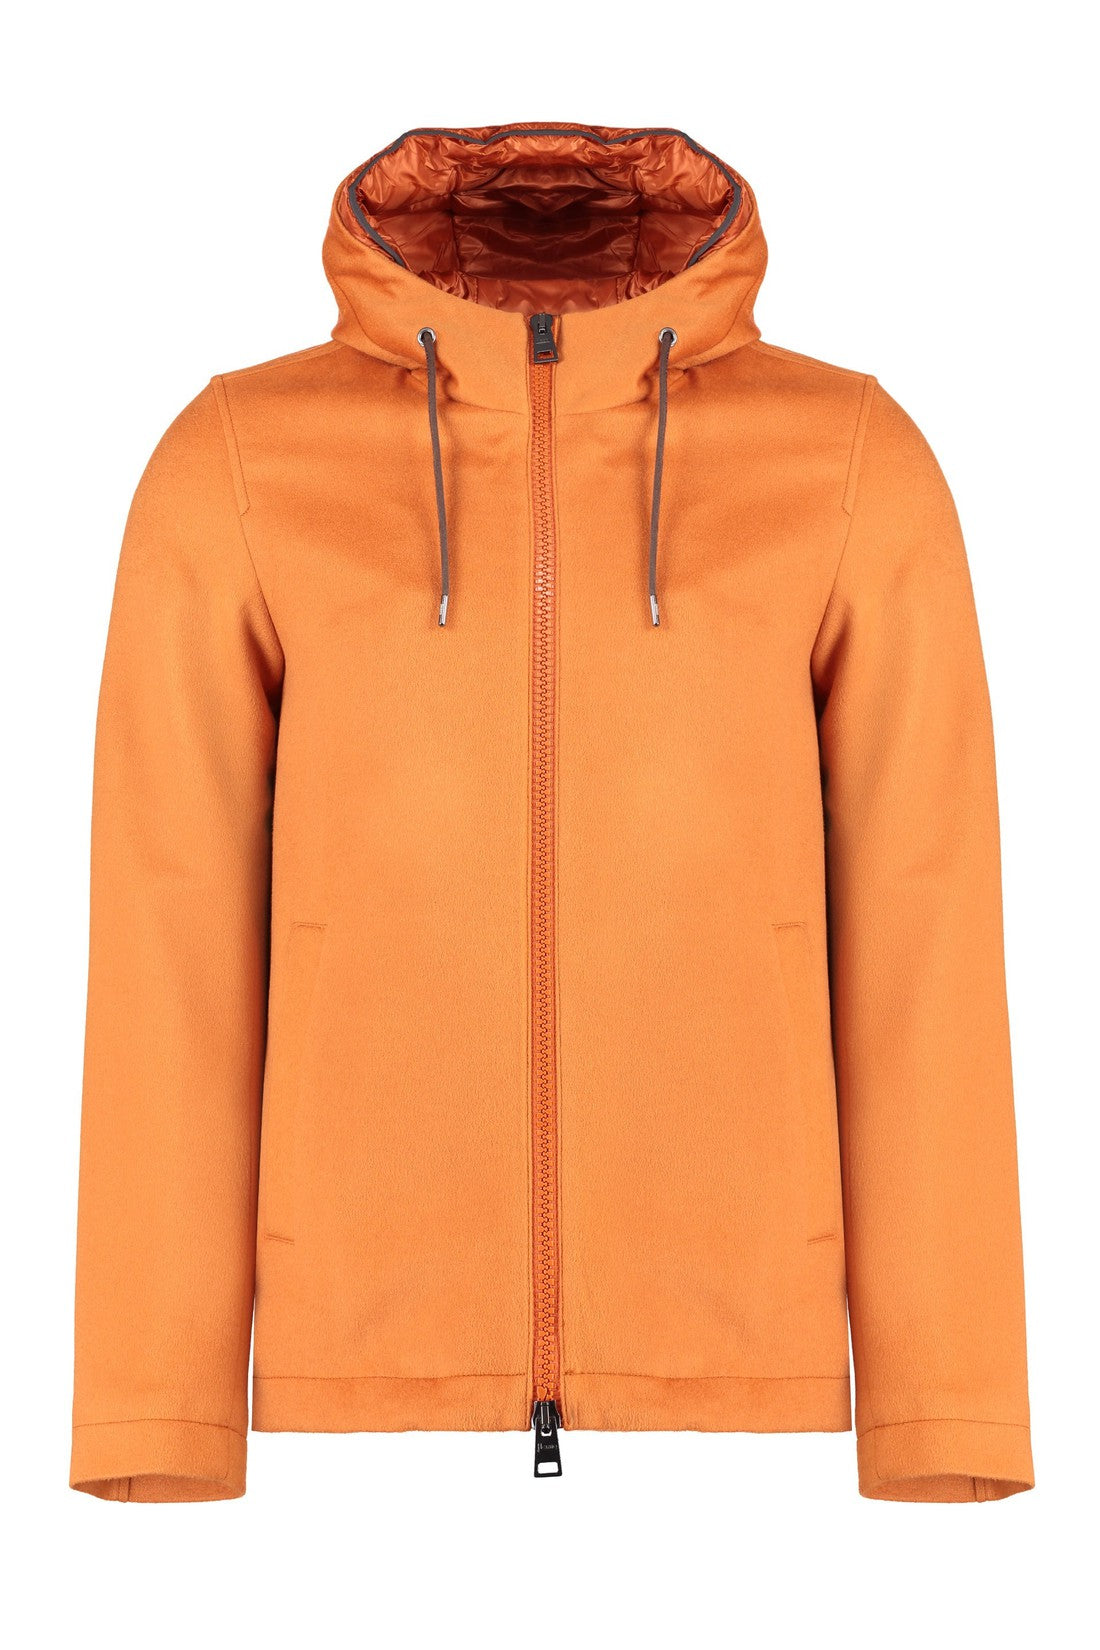 Herno-OUTLET-SALE-Cashmere jacket-ARCHIVIST